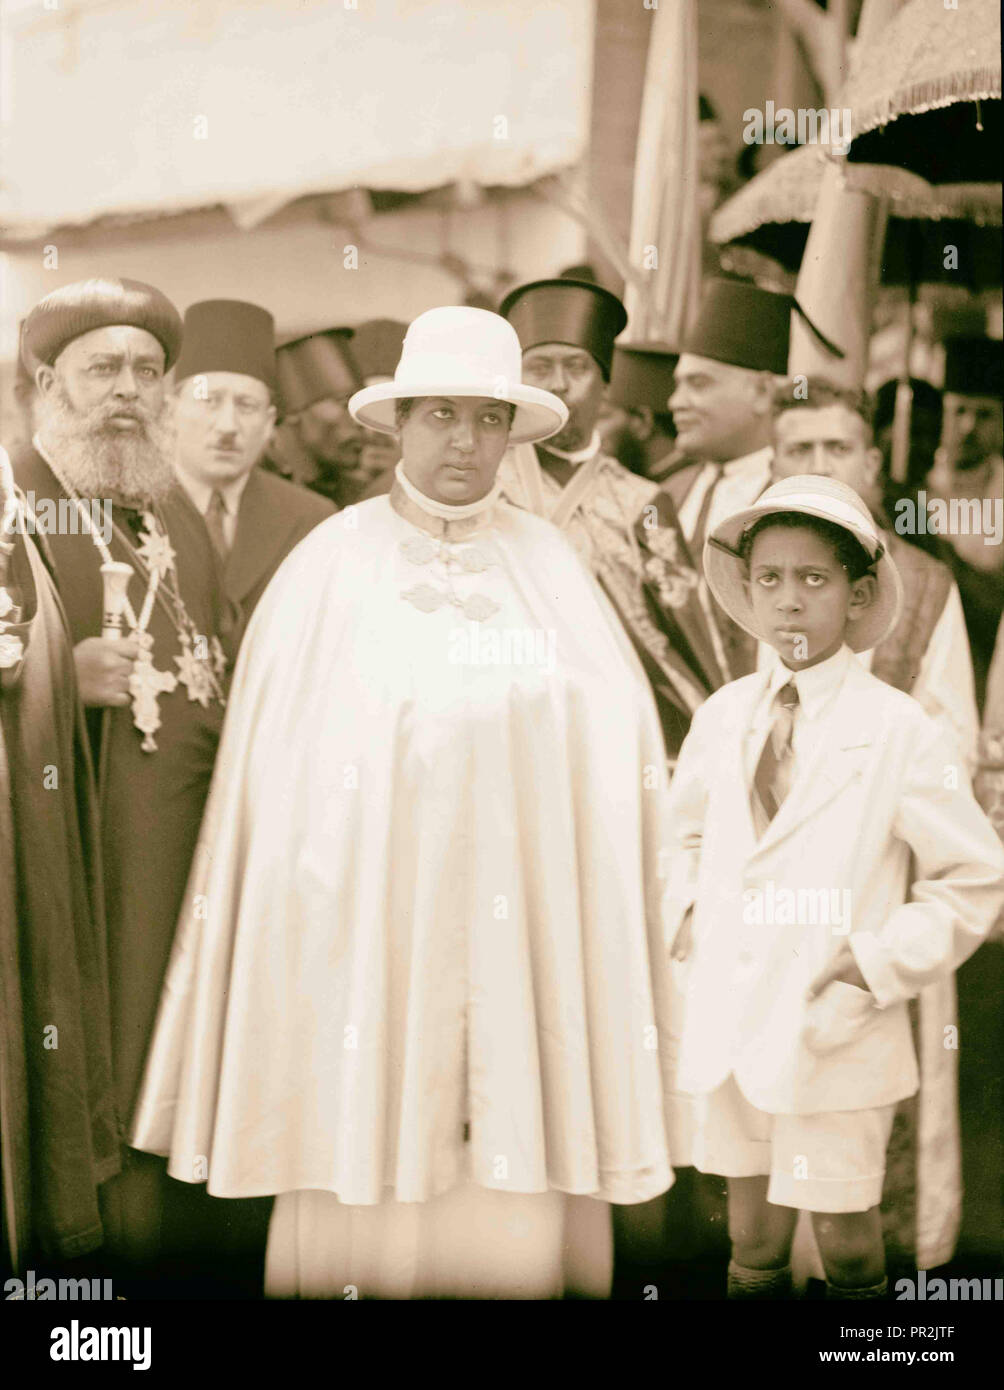 Reine Mannen de l'Éthiopie visite Jérusalem. Le 6 septembre 1933. Sa Majesté la Reine d'Ethiopie avec son fils. 1933, Jérusalem, Israël Banque D'Images